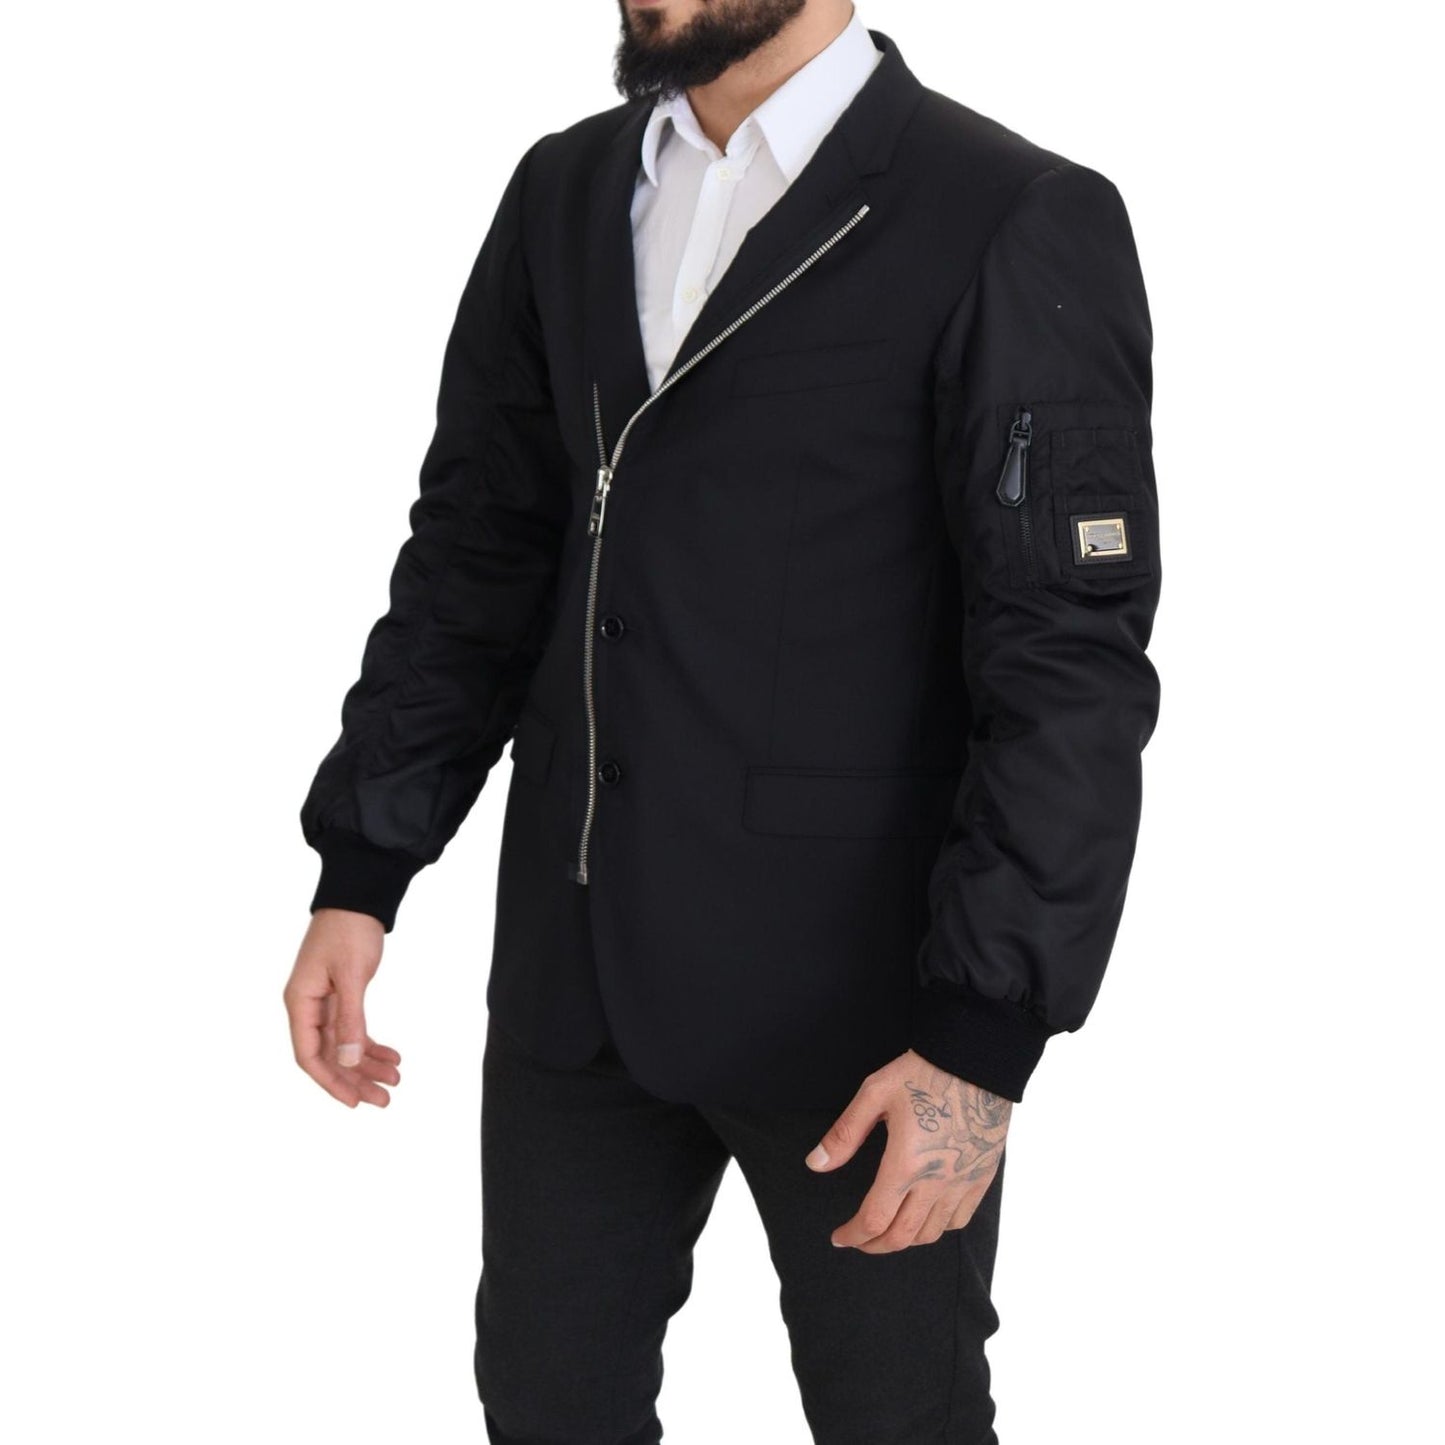 Dolce & Gabbana Elegant Black Virgin Wool Jacket black-wool-full-zip-long-sleeves-jacket